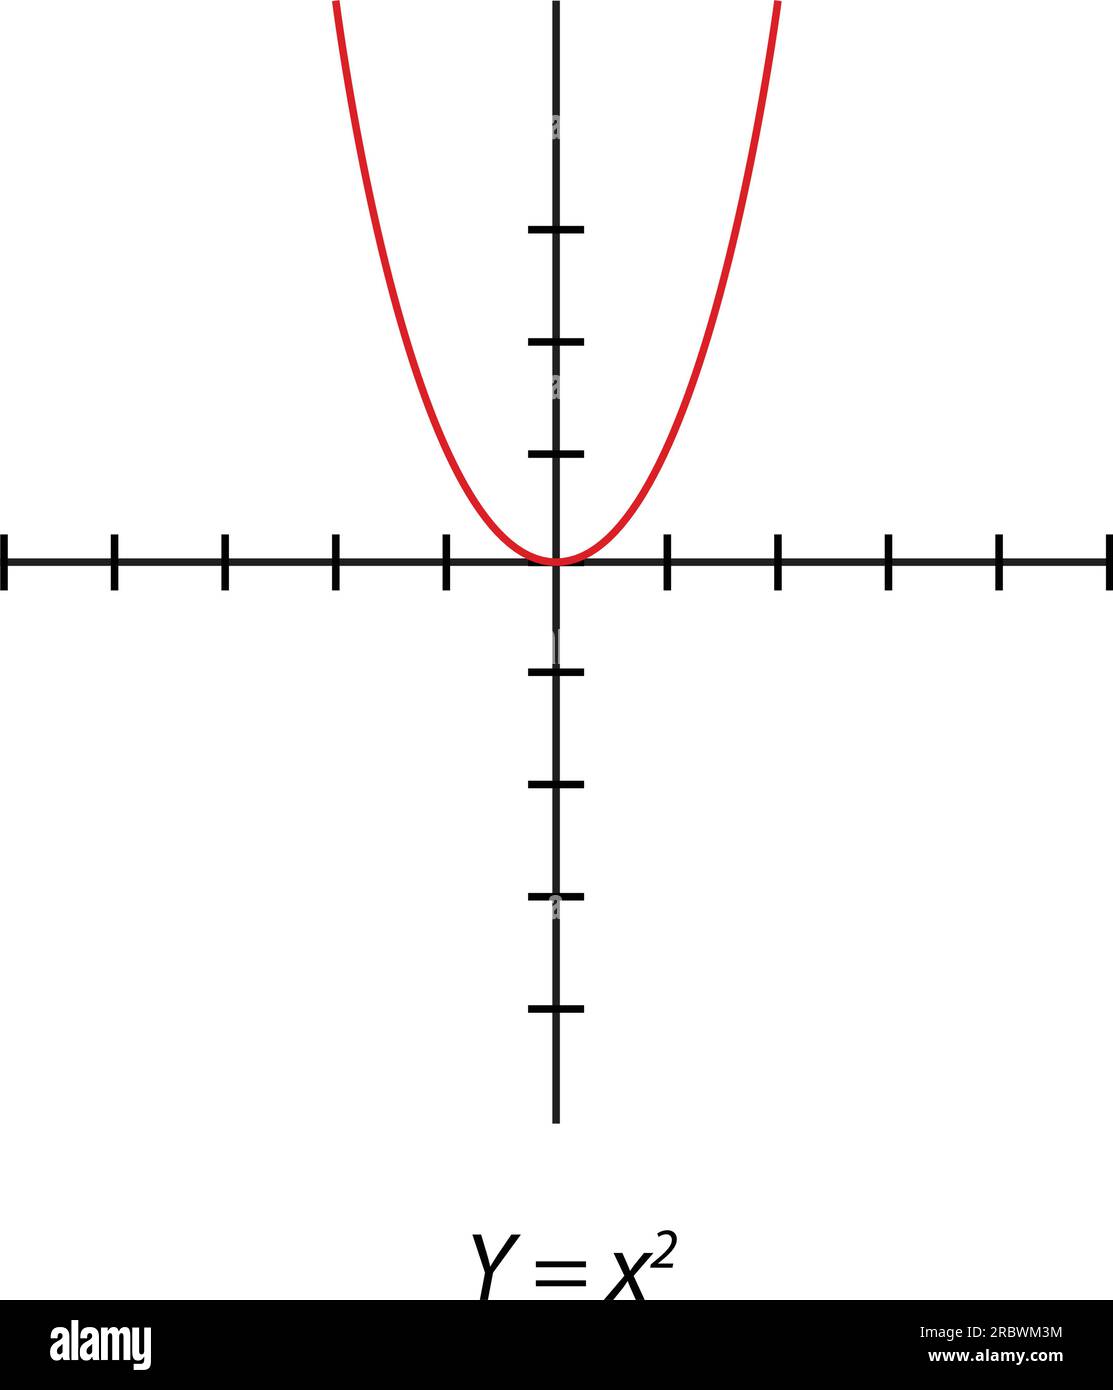 Y= x2 grafico quadrato. Piano delle coordinate ortogonali semplice con gli assi X e Y. illustrazione vettoriale isolata su sfondo bianco. Illustrazione Vettoriale